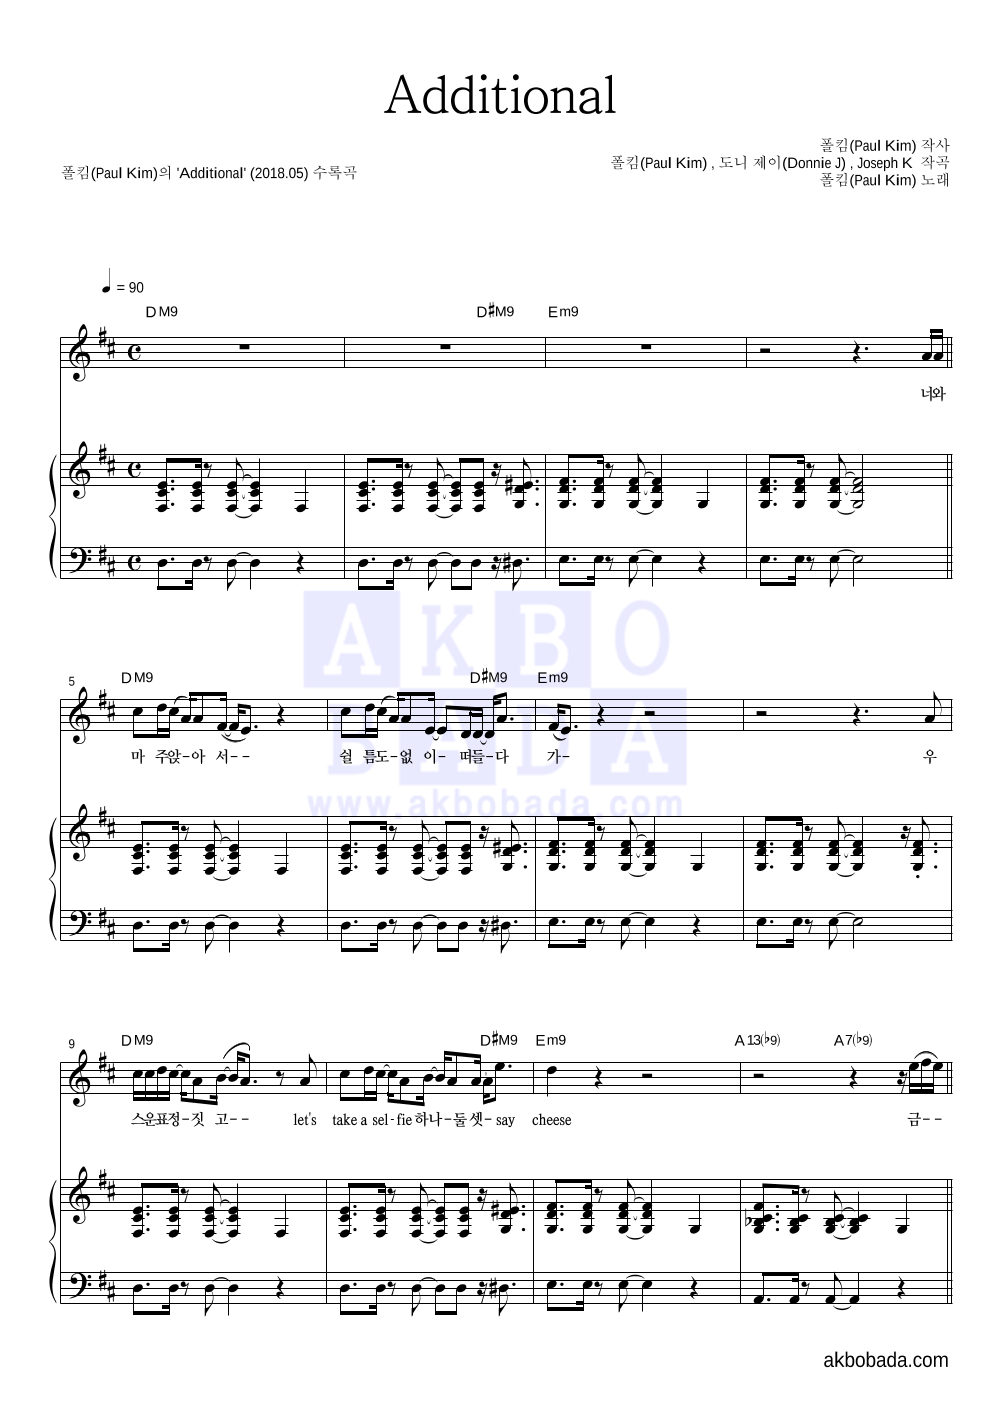 폴킴 - Additional 피아노 3단 악보 